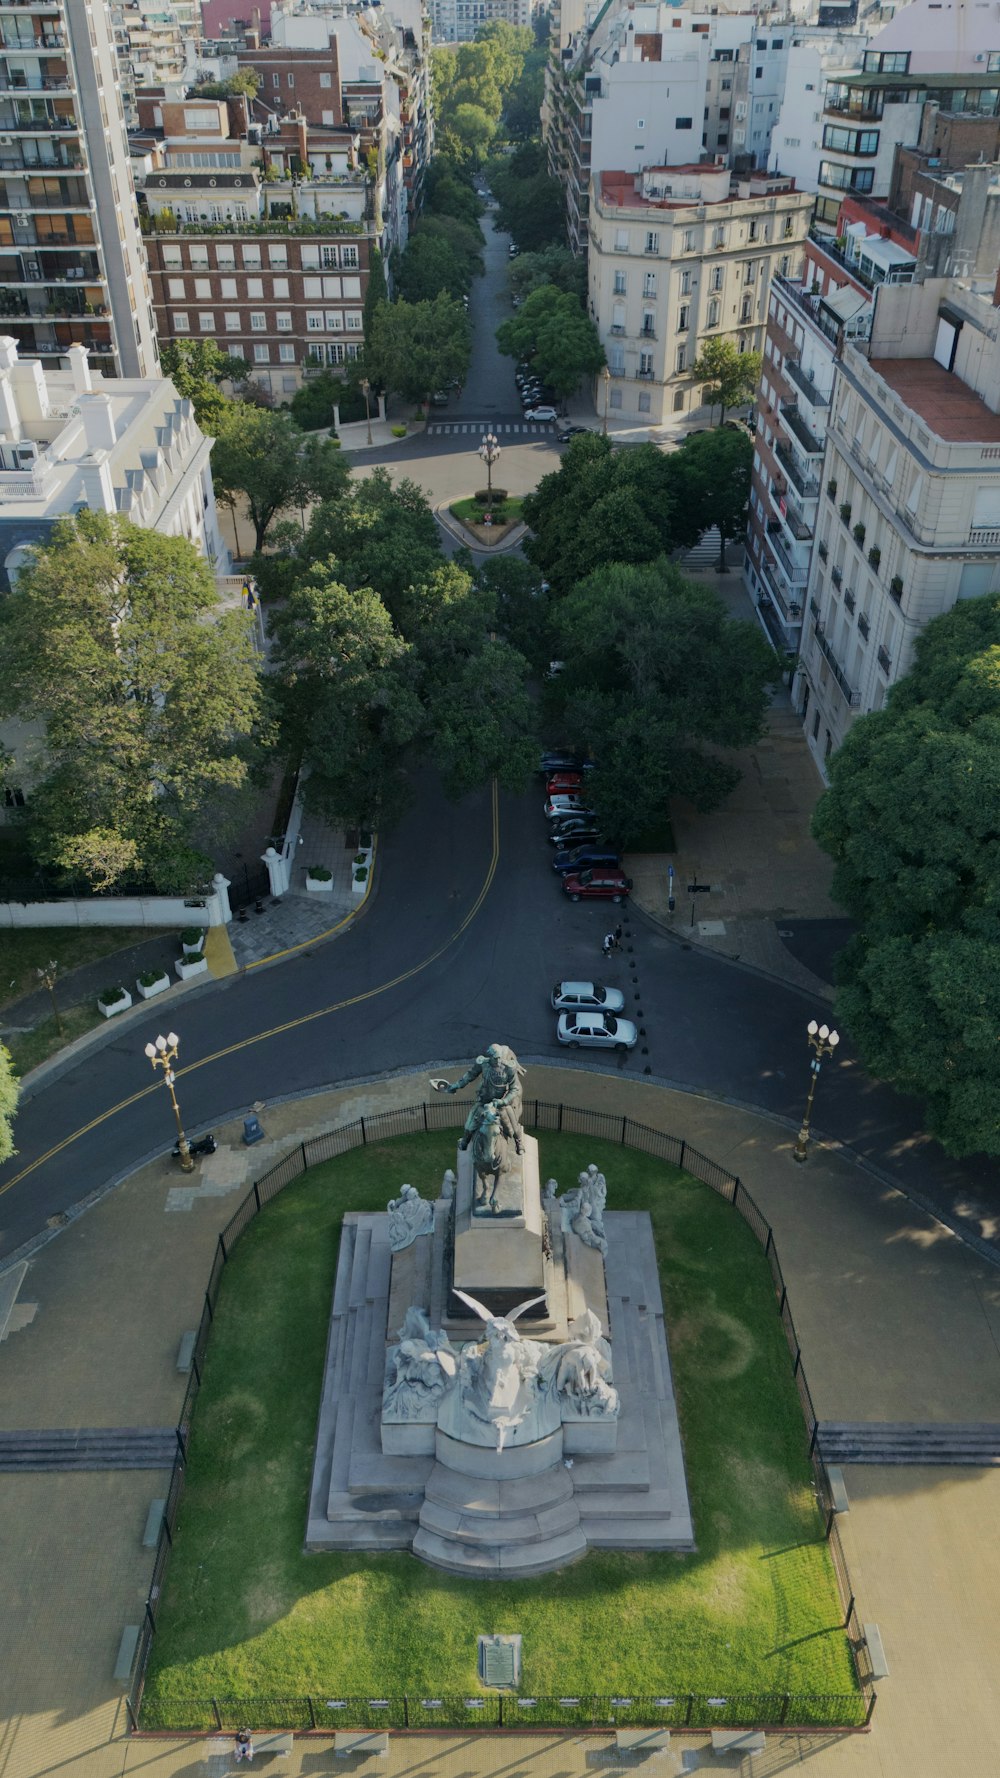 Una vista aérea de una ciudad con una estatua en el centro